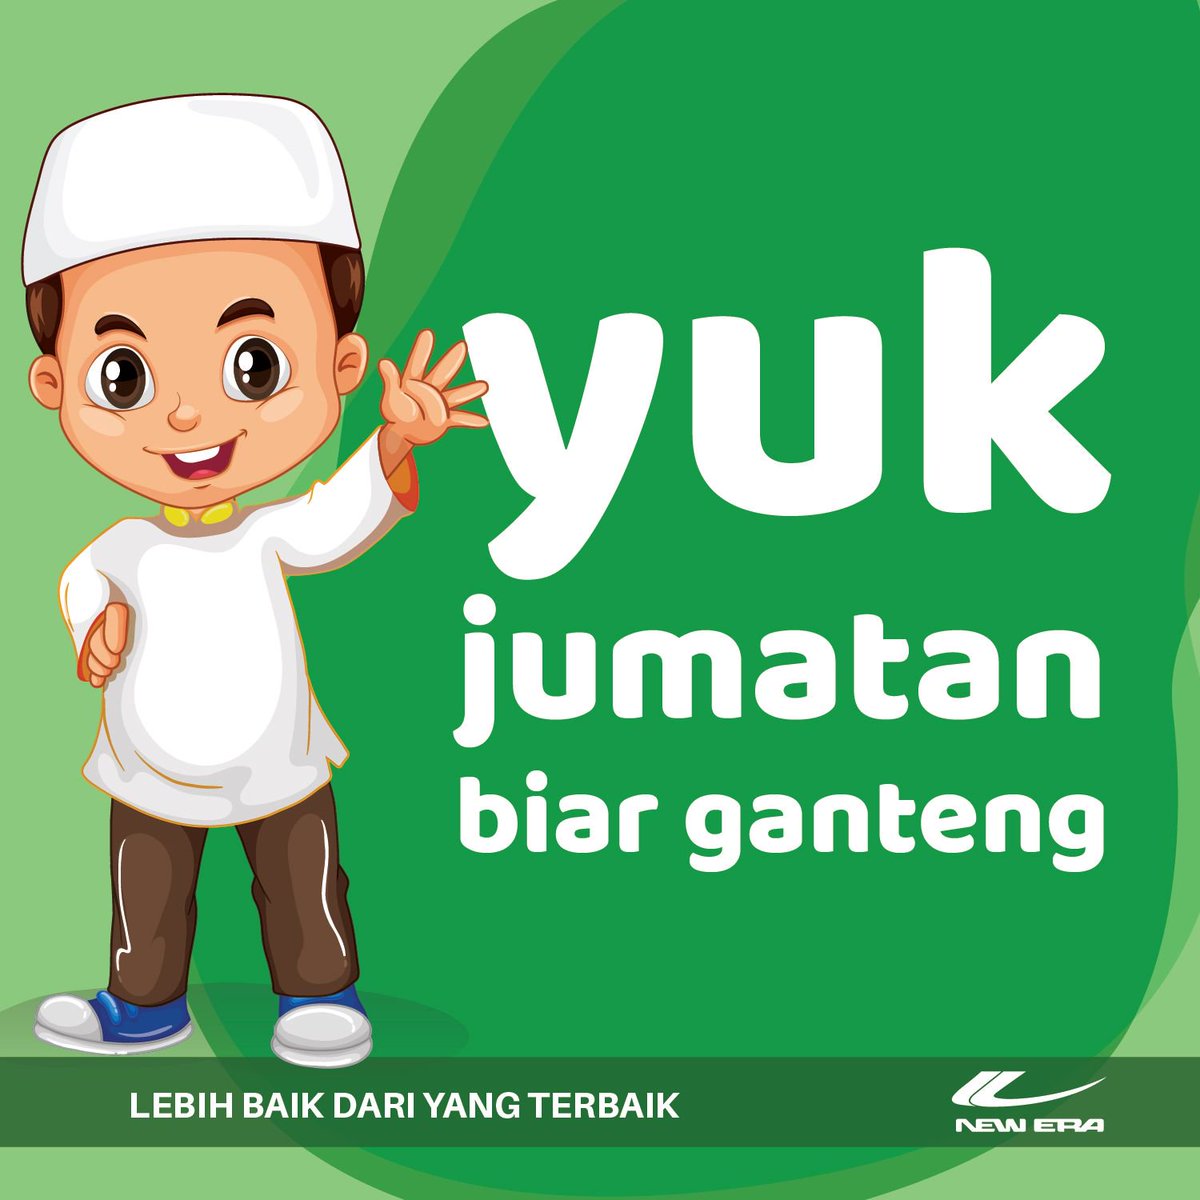 New Era Indonesia Hari Jumat Lho Guys Buat Kamu Yang Muslim